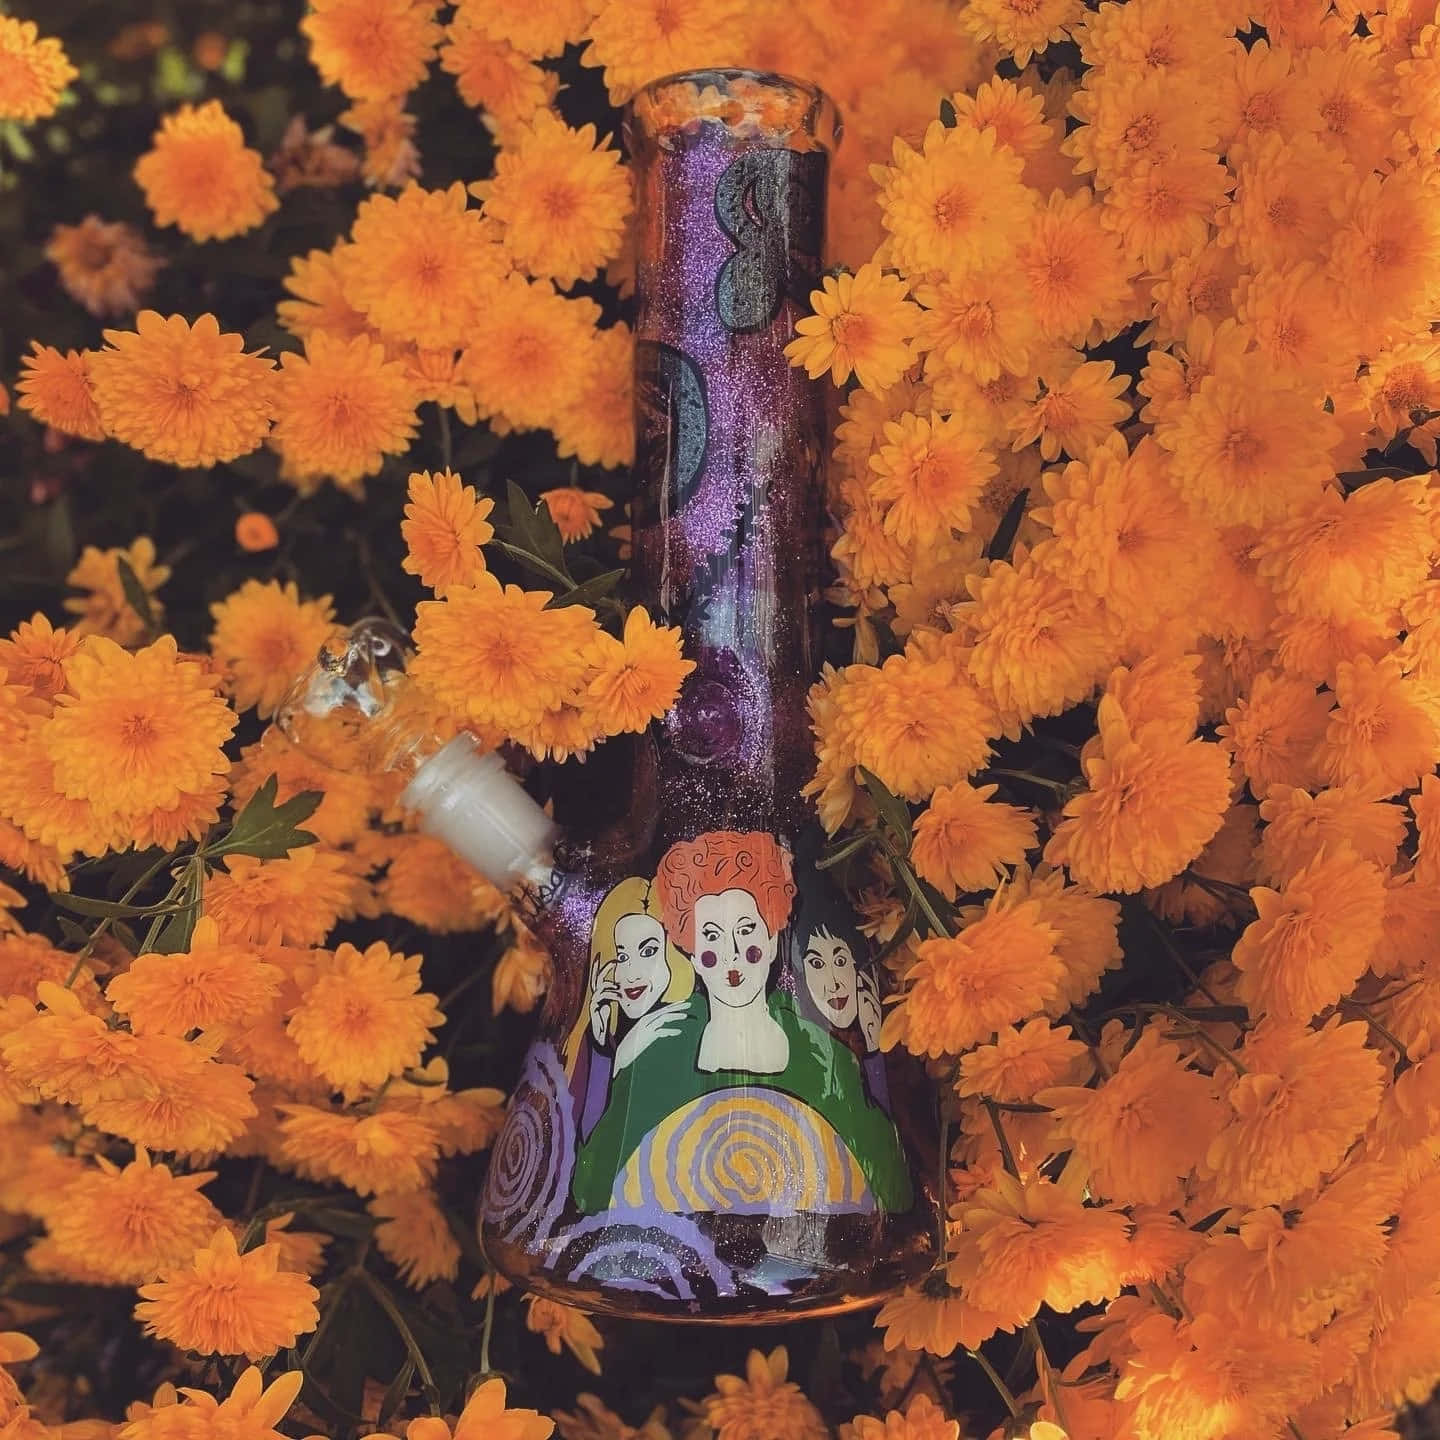 Hocus Pocus Themed Bong Among Orange Flowers Wallpaper